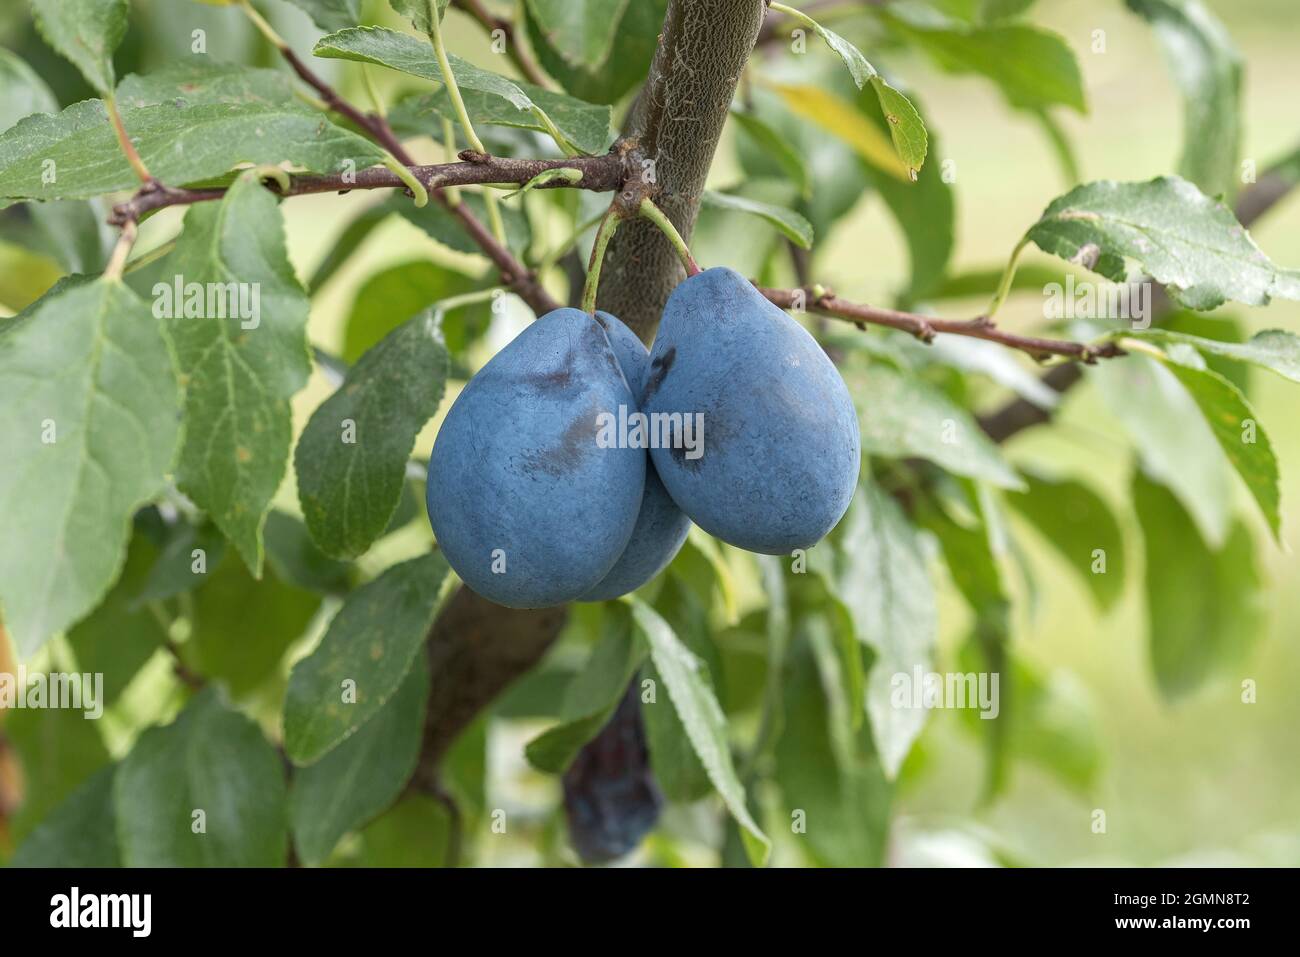 Prunier européenne (Prunus domestica 'Valjevka', Prunus domestica Valjevka), prunes sur une branche, président du cultivar Banque D'Images